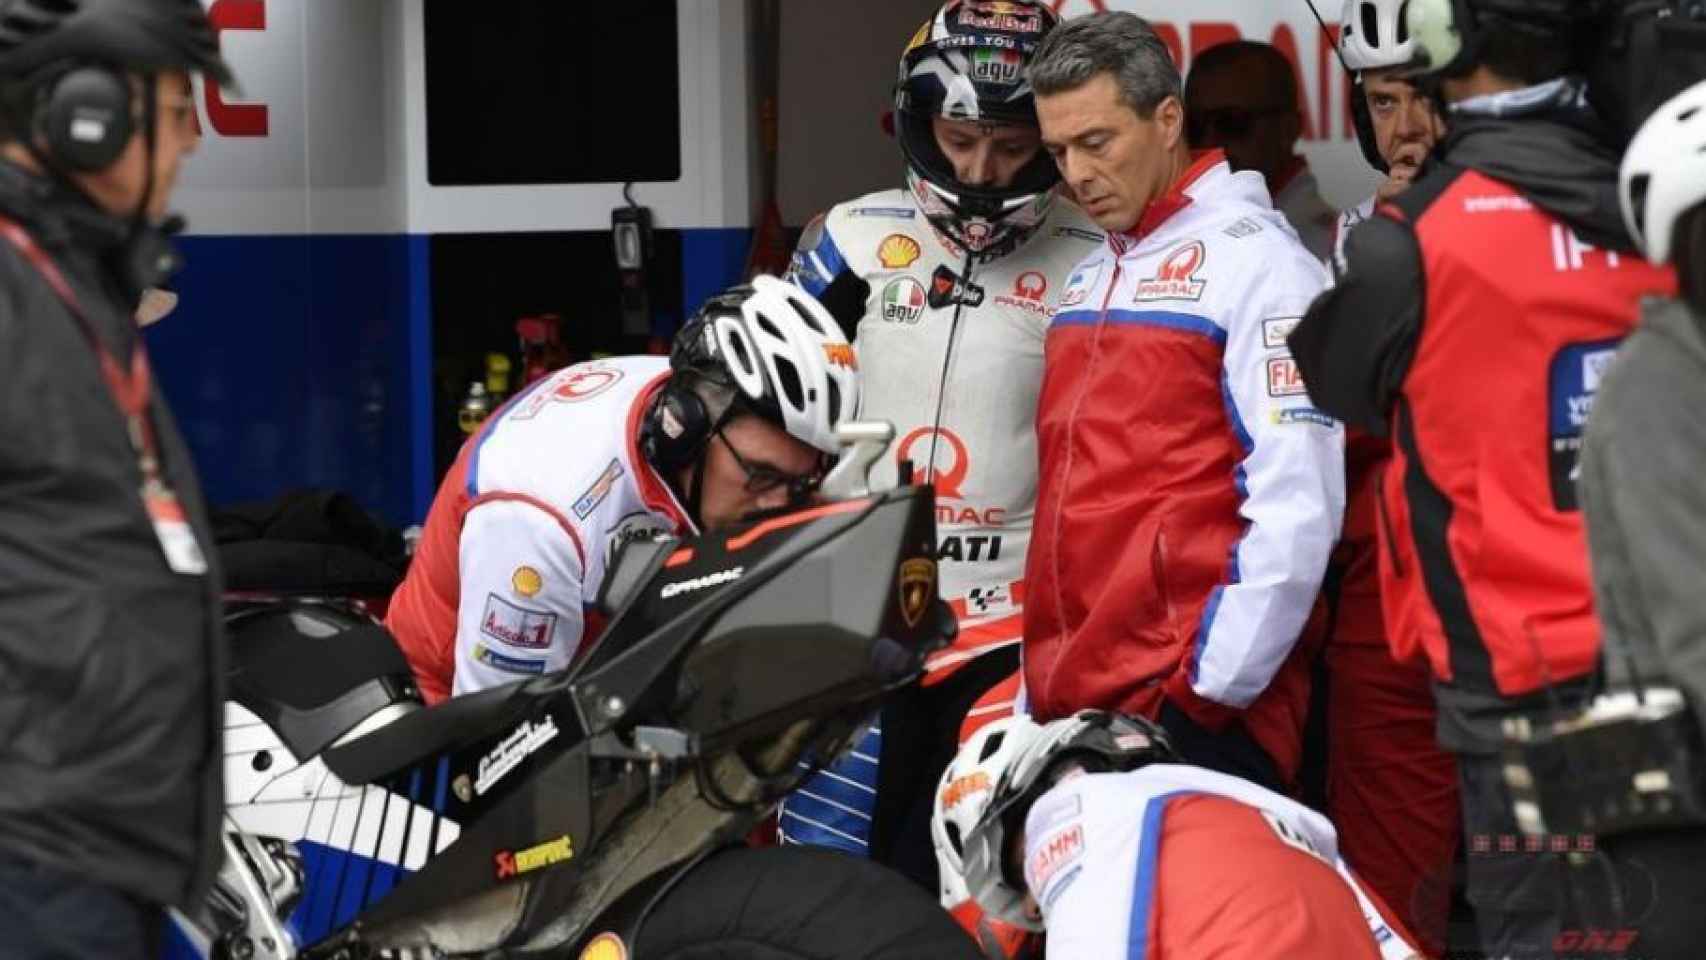 Paolo Ciabatti, director deportivo de Ducati. Foto: GPone.com